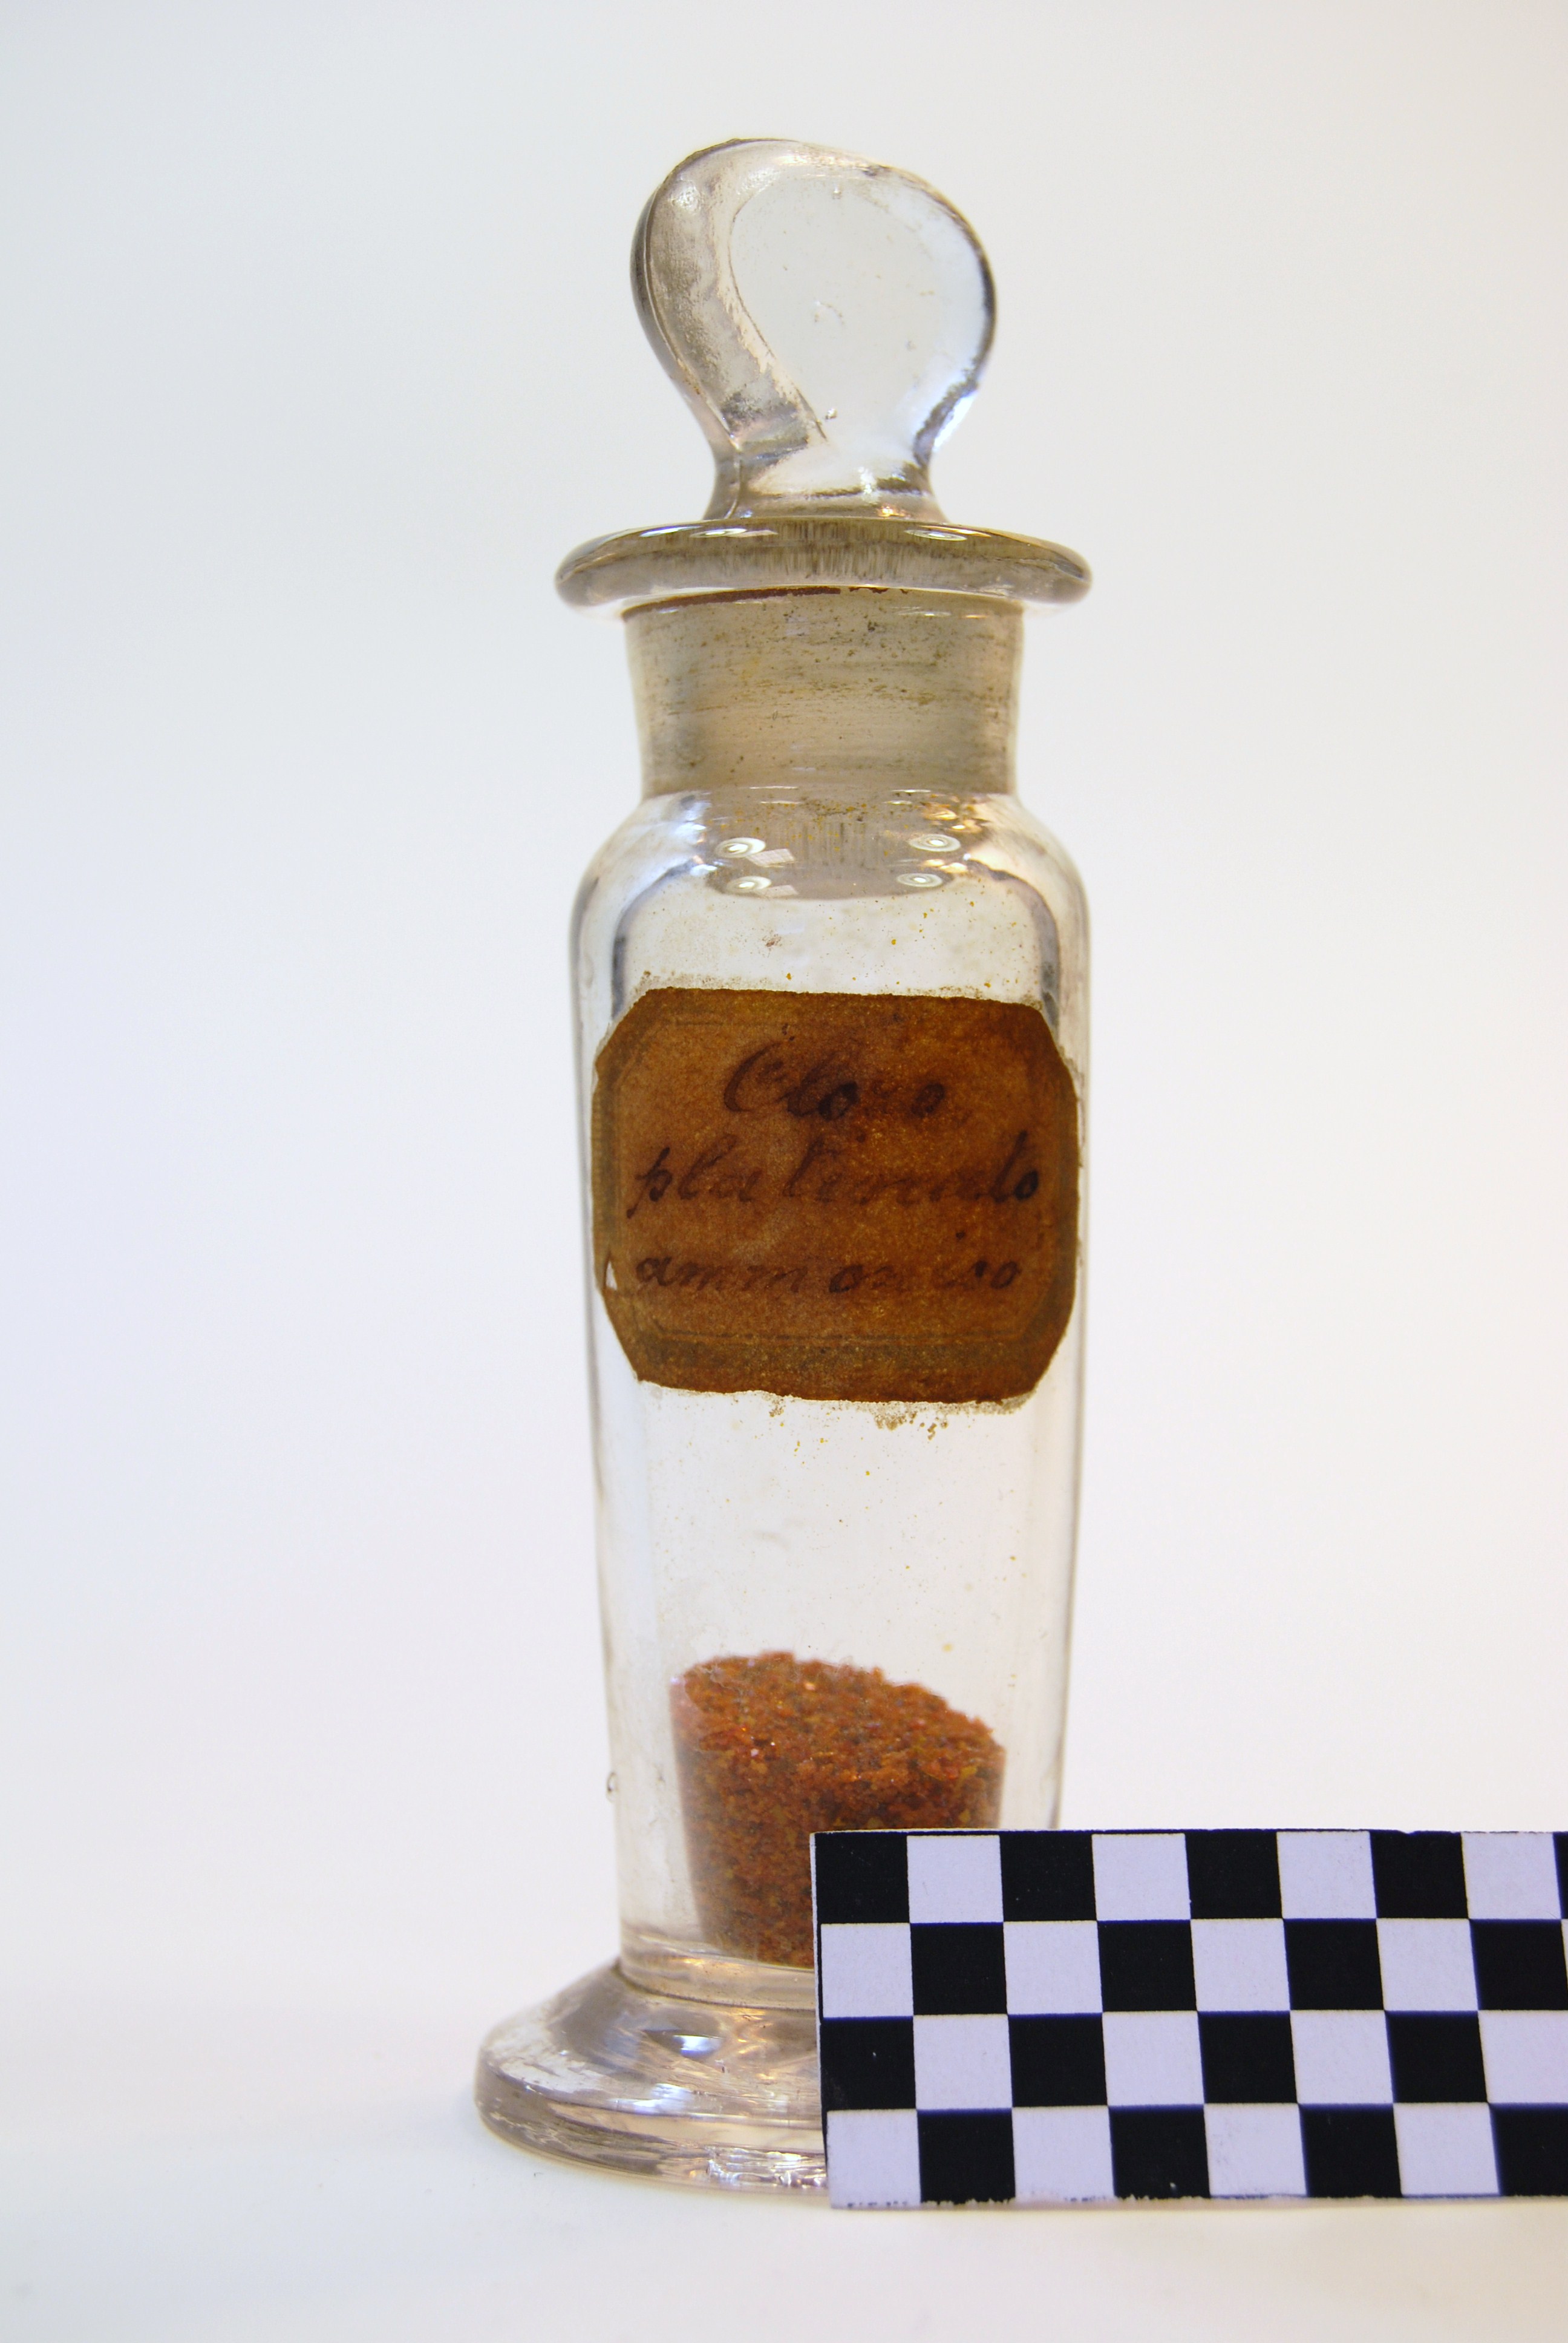 cloro platinato ammonico (prodotto chimico, di sintesi) di Ugo Schiff (laboratorio) - scuola chimica fiorentina (metà/ inizio XIX/ XX)